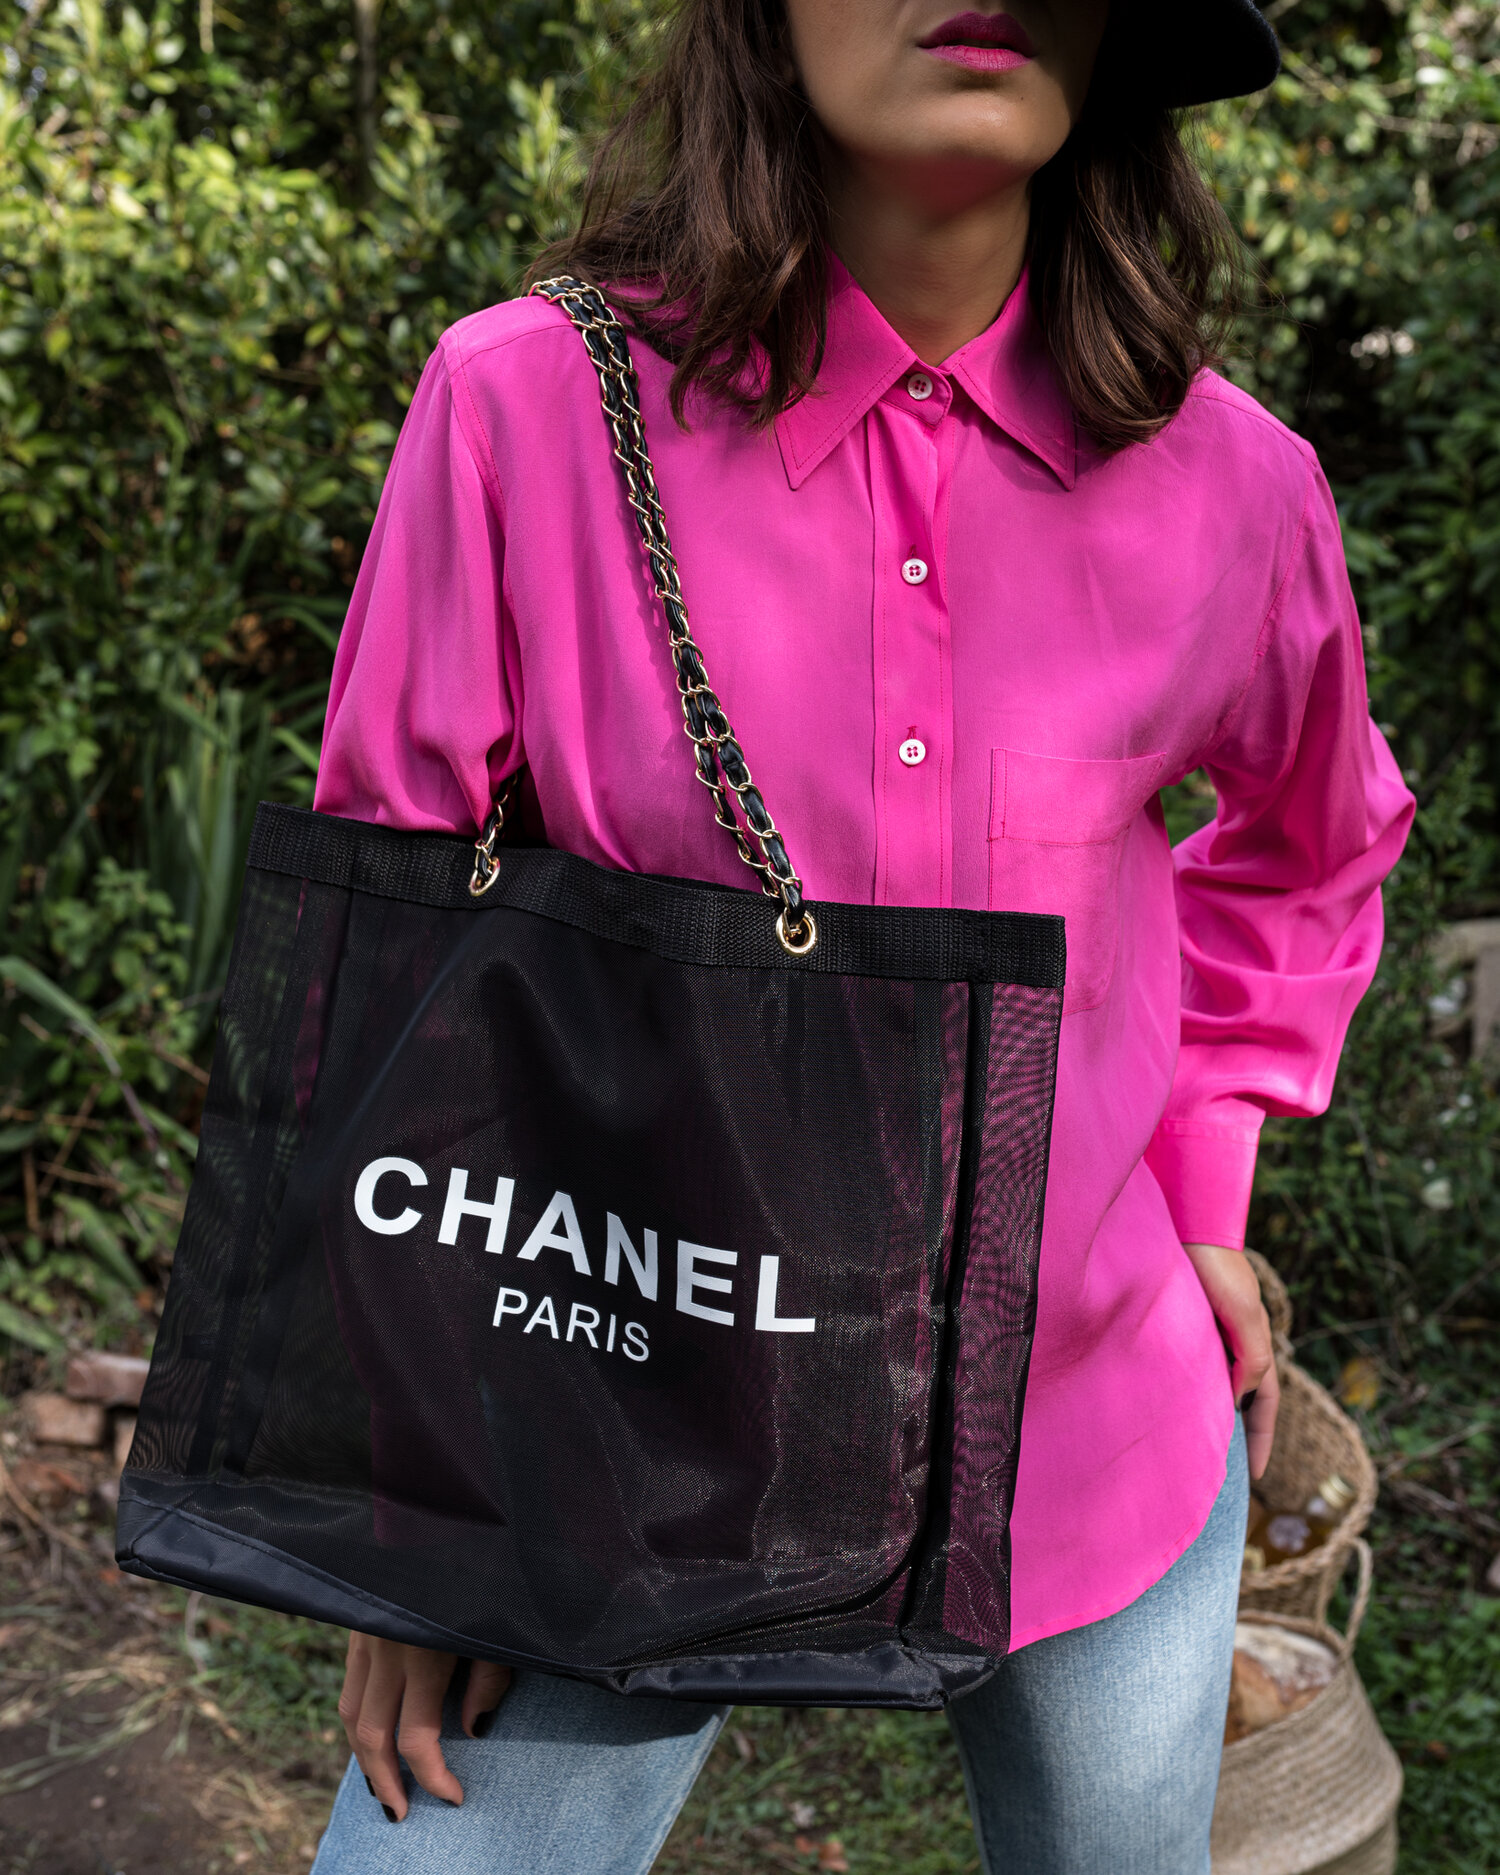 chanel large shopper bag